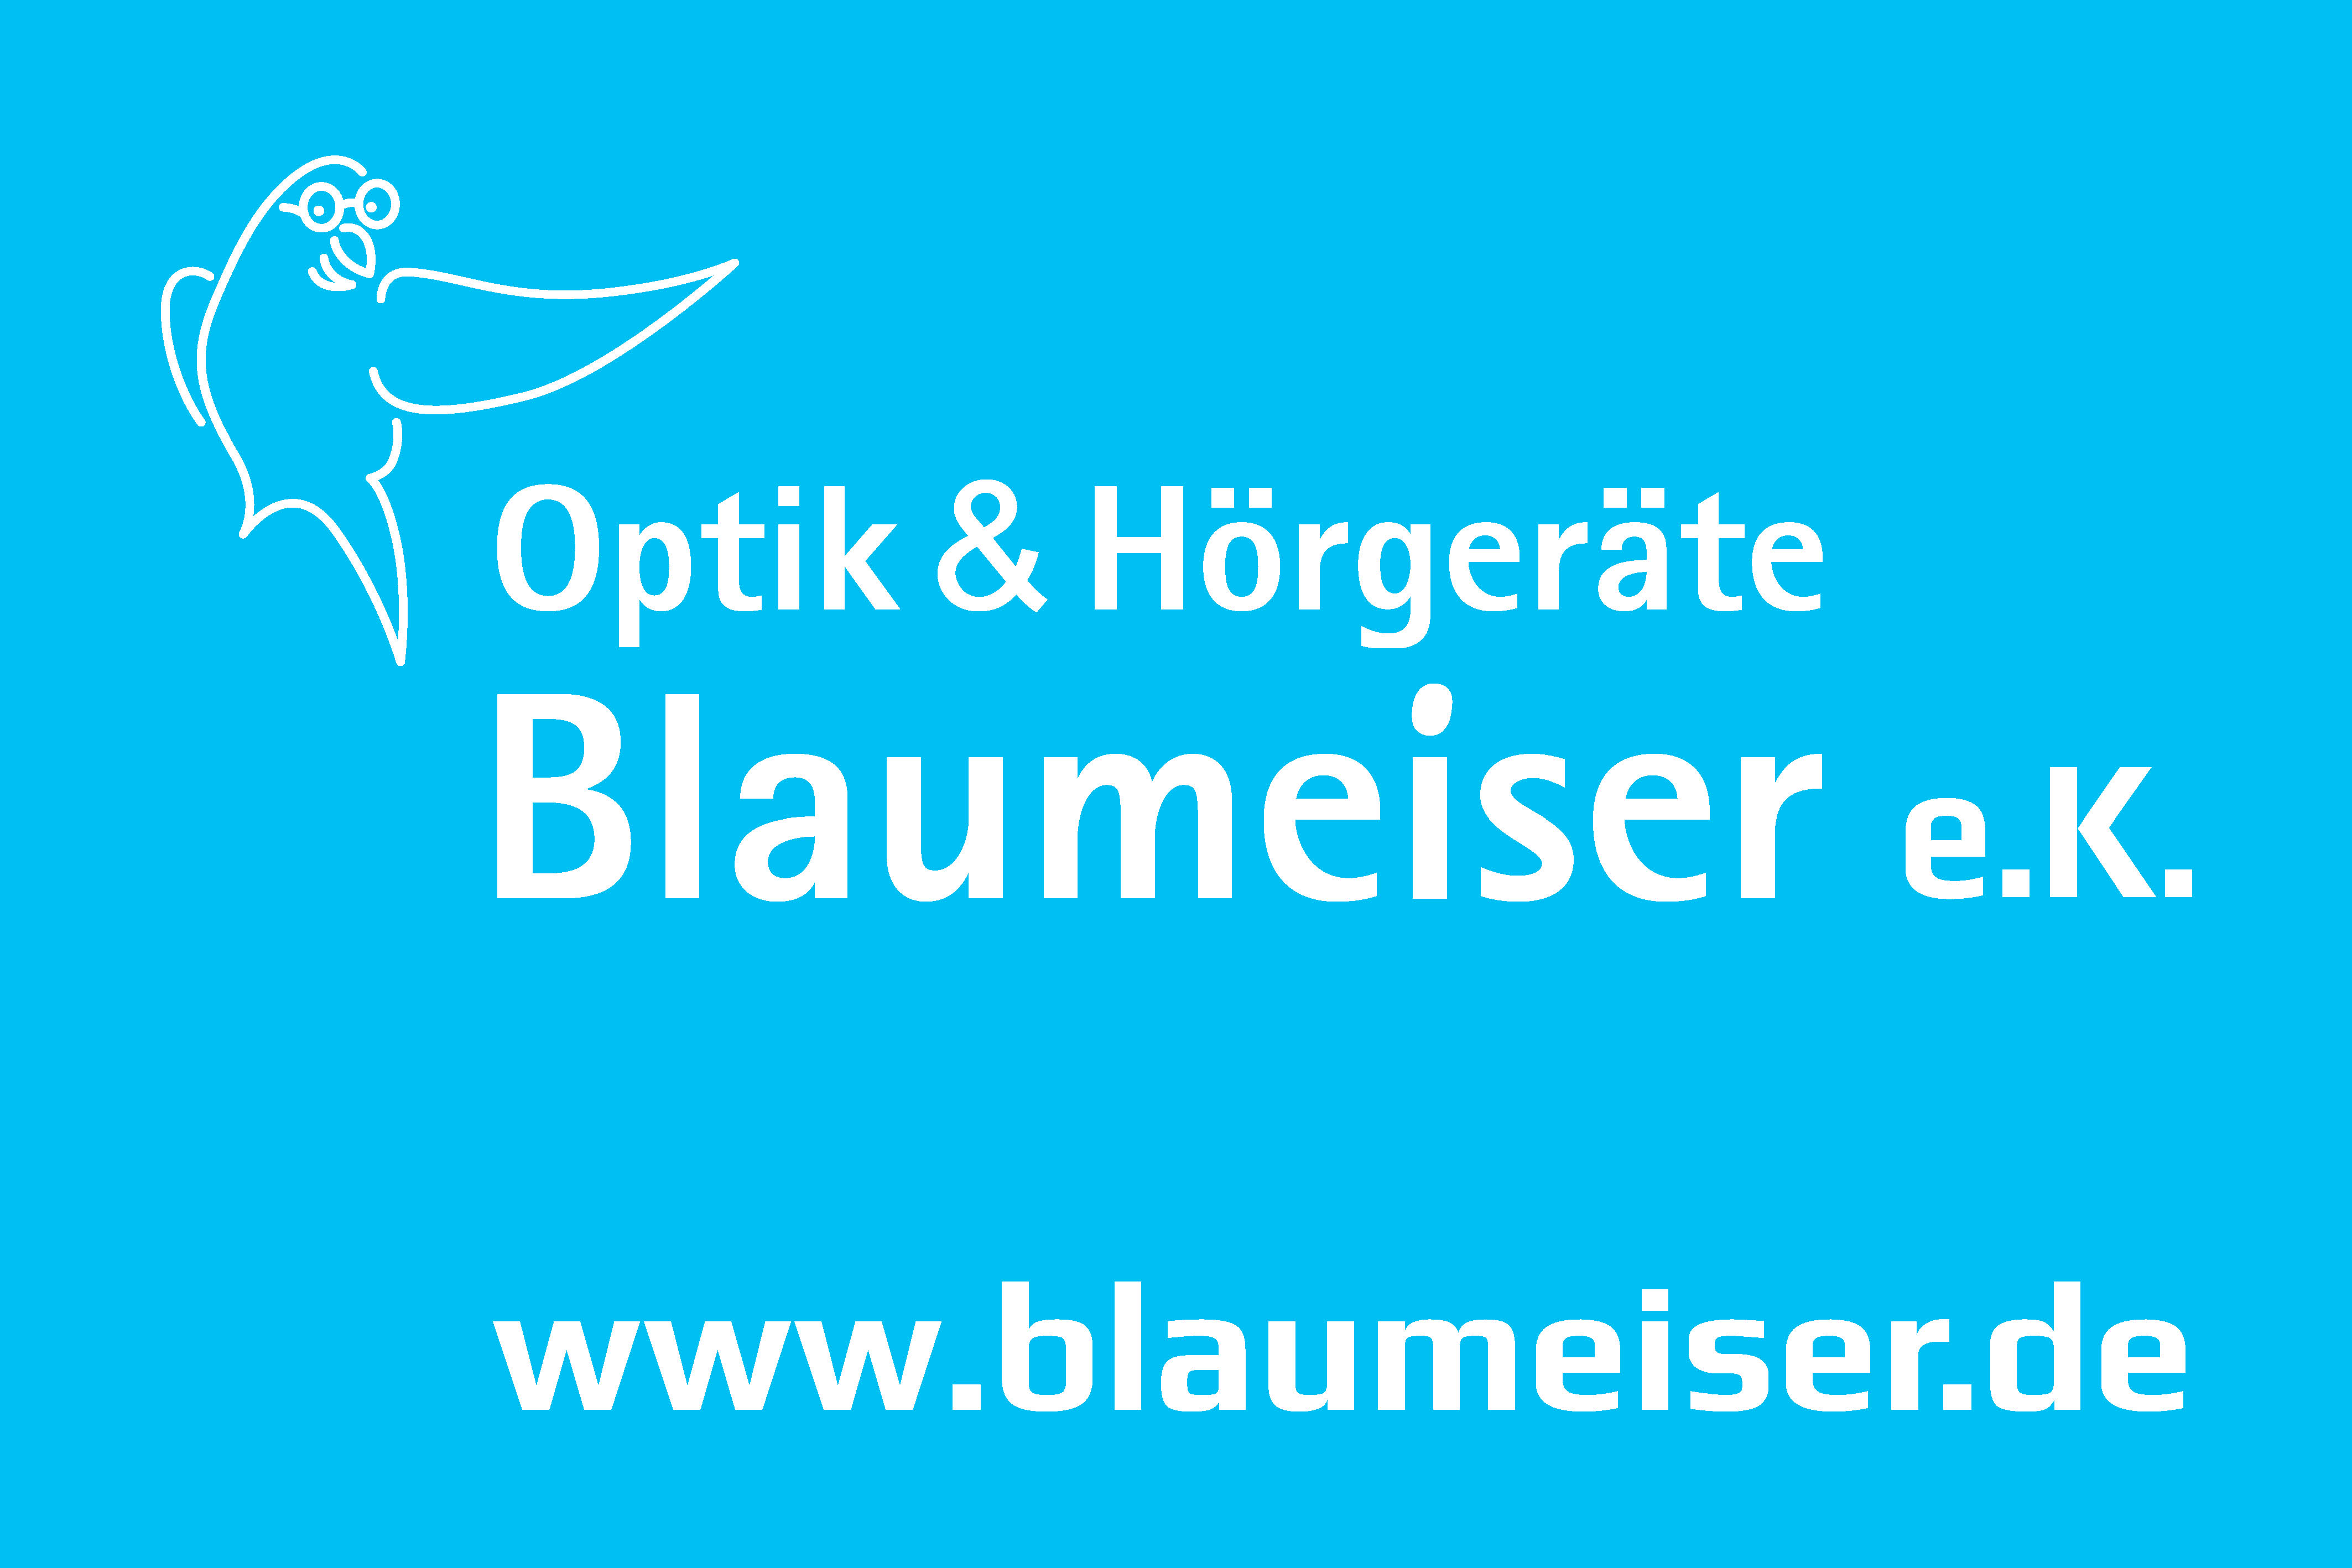 zur Homepage von Optik & Hrgerte Blaumeiser